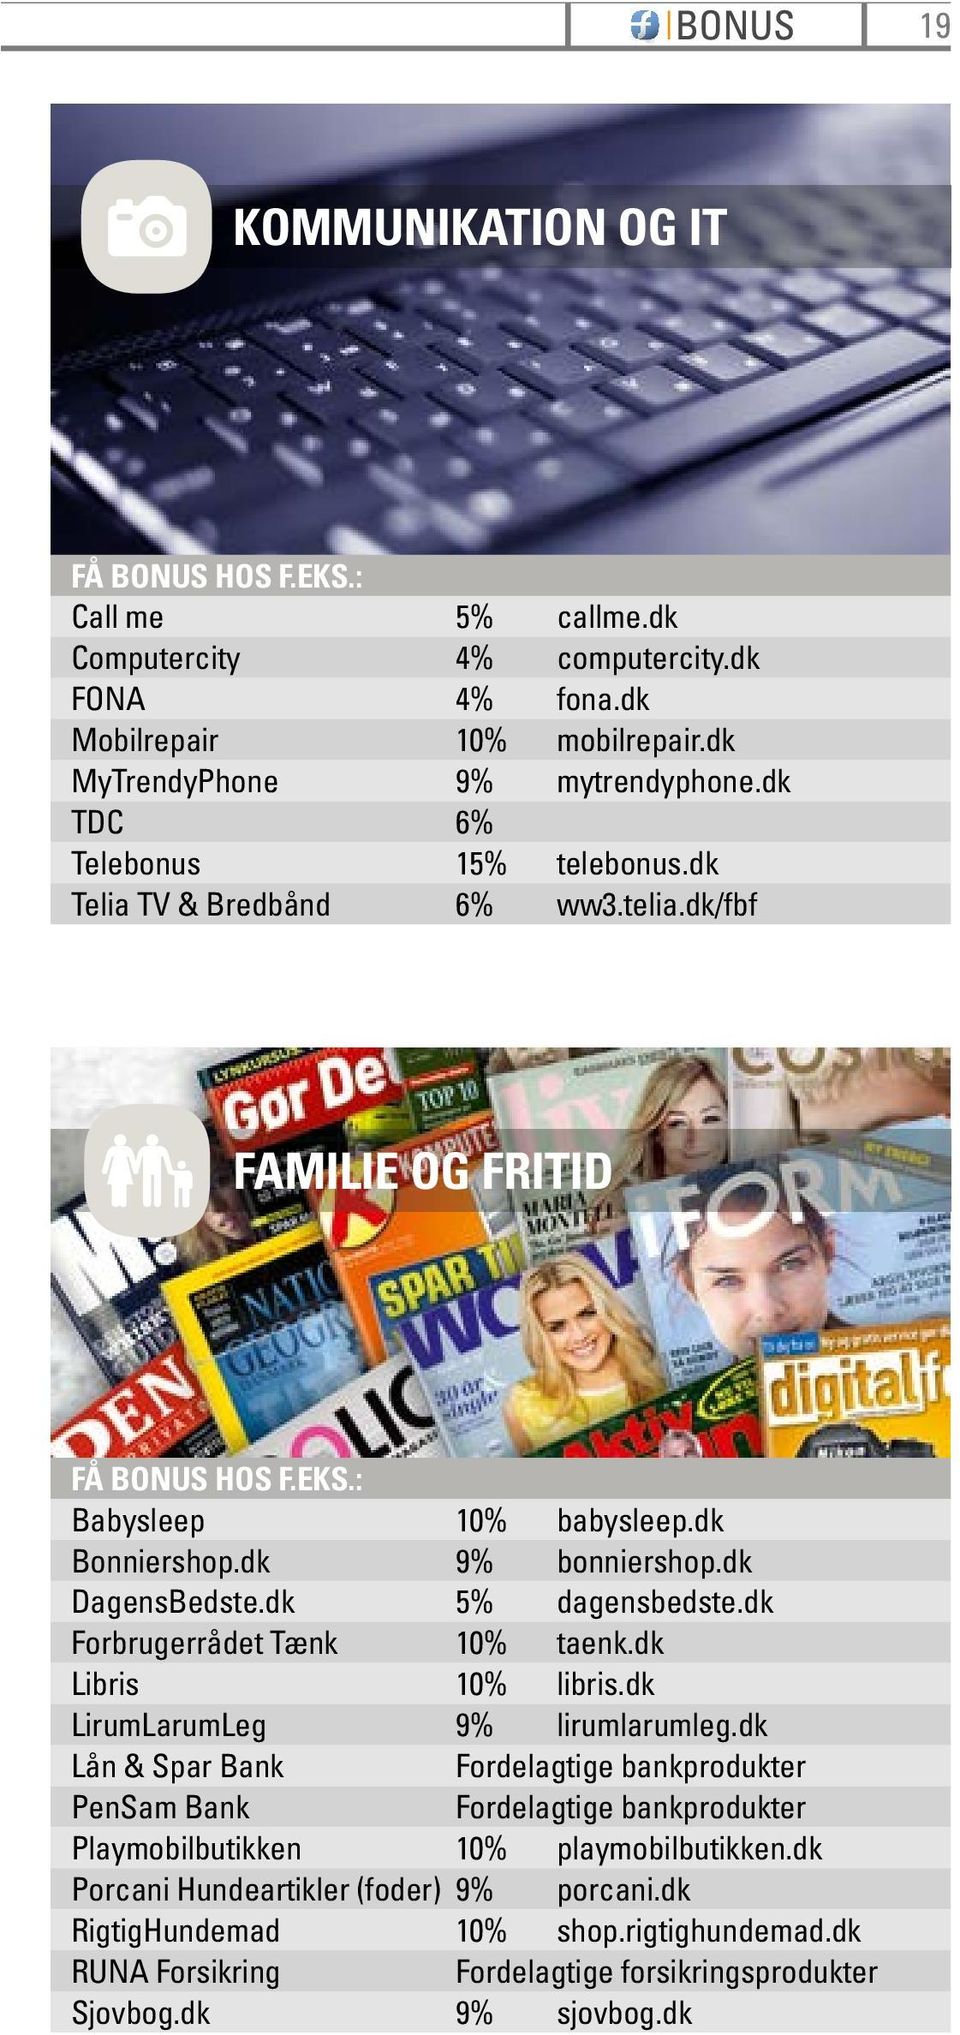 dk 5% dagensbedste.dk Forbrugerrådet Tænk 10% taenk.dk Libris 10% libris.dk LirumLarumLeg 9% lirumlarumleg.